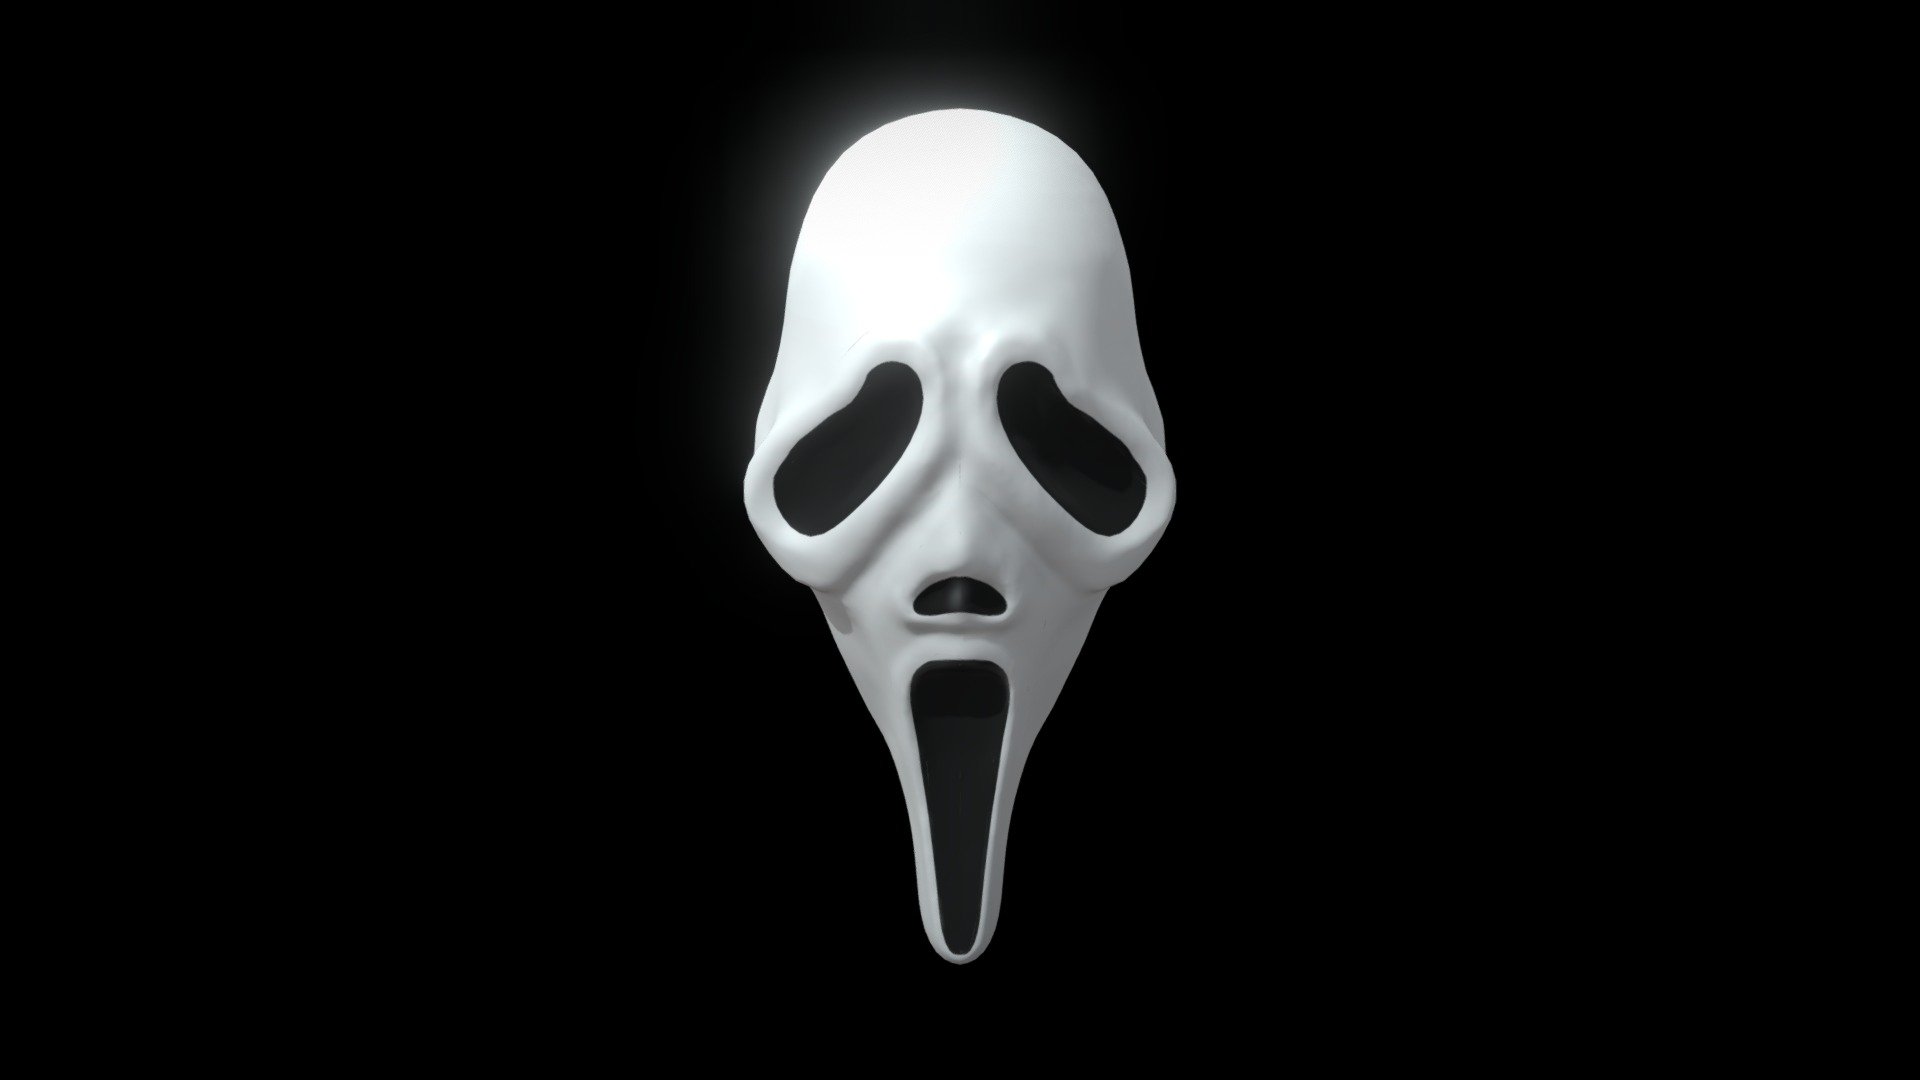 Scream (Ghosface) - 3D model by porcela1n_ [199fedb] - Sketchfab